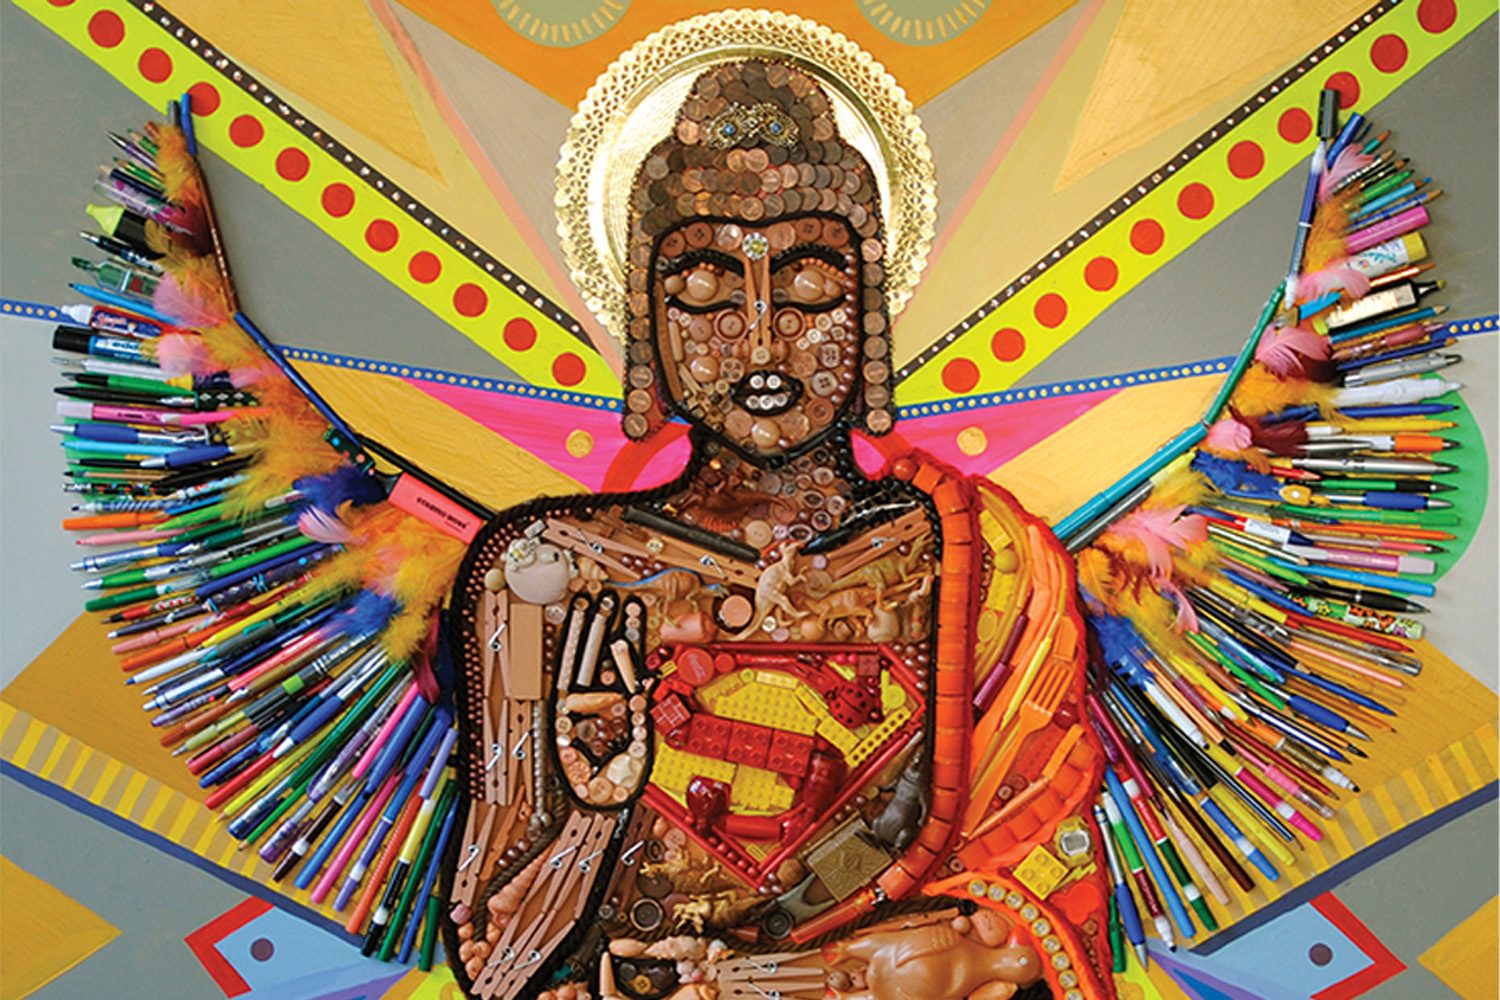 anemone-sommer-blog-4 Meditation Buddha